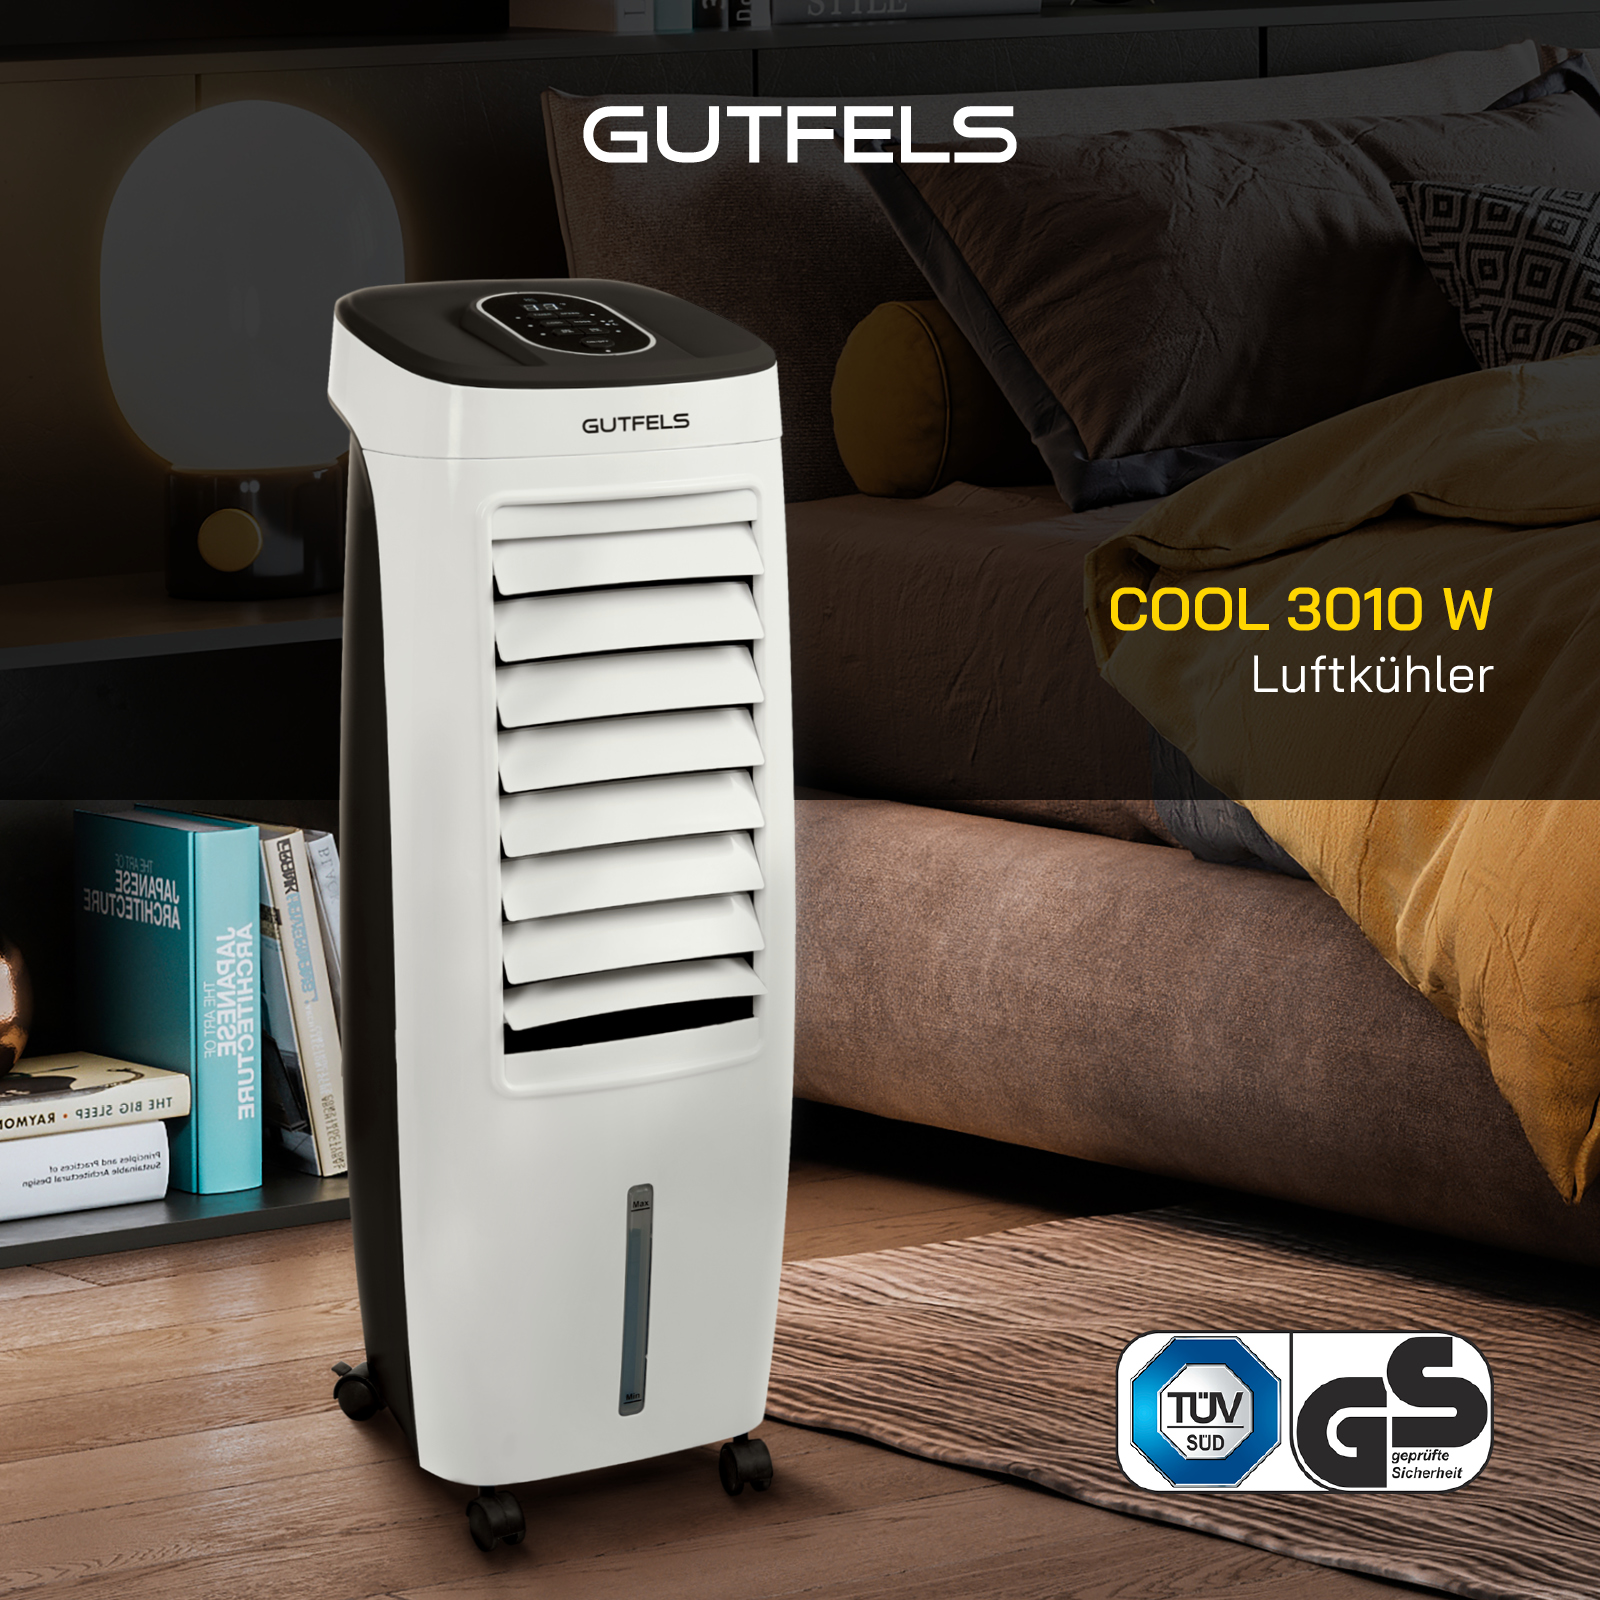 3010 COOL W GUTFELS Luftkühler